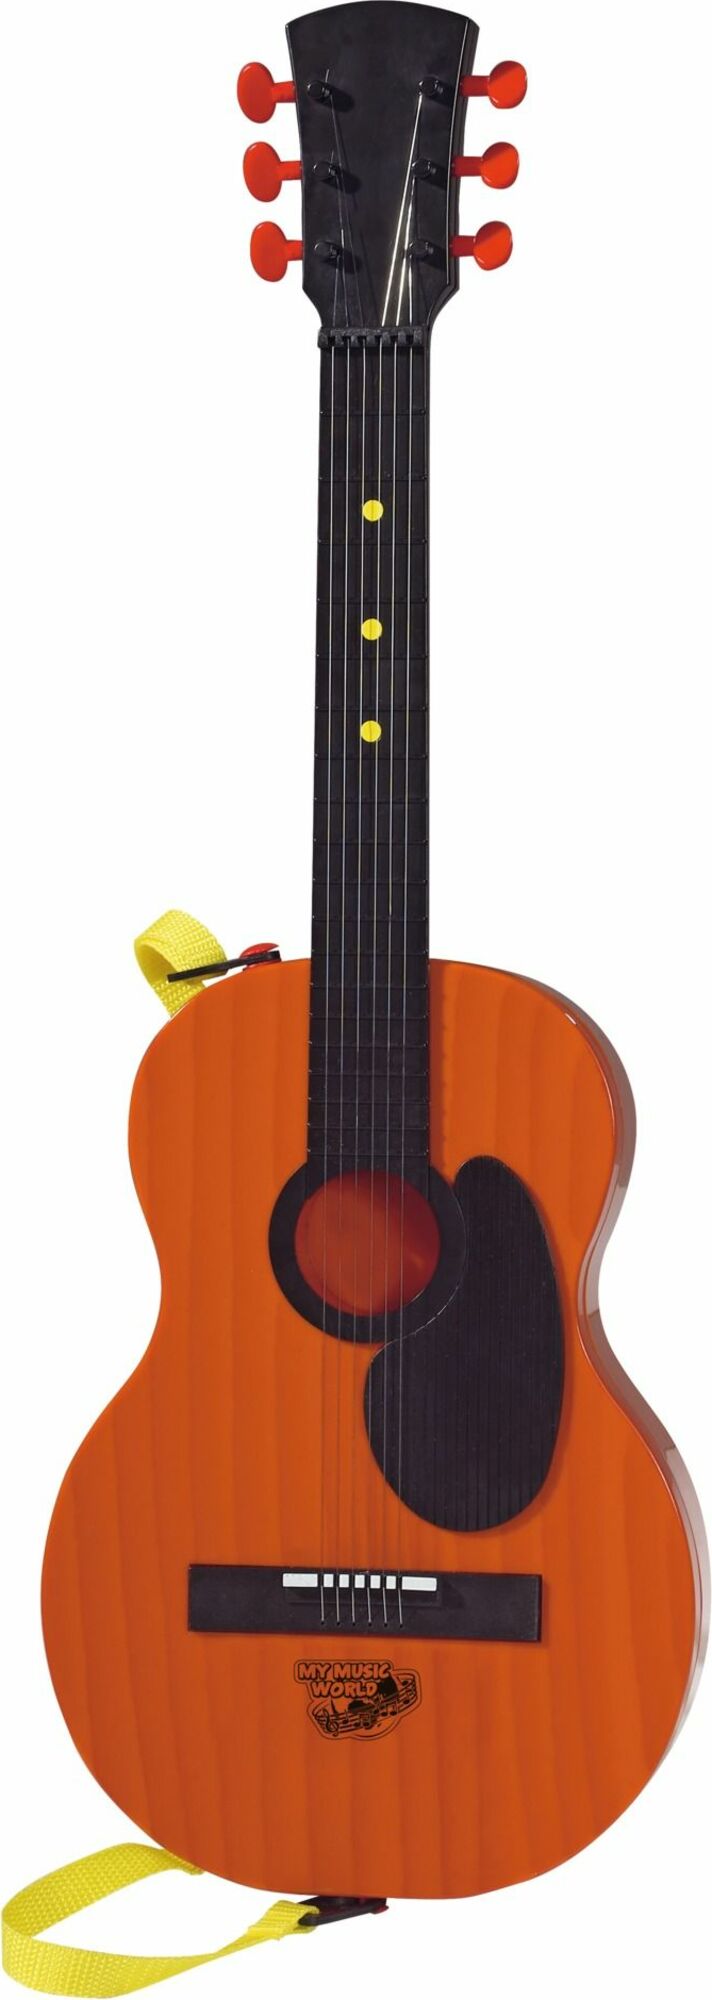 Country kytara 54 cm